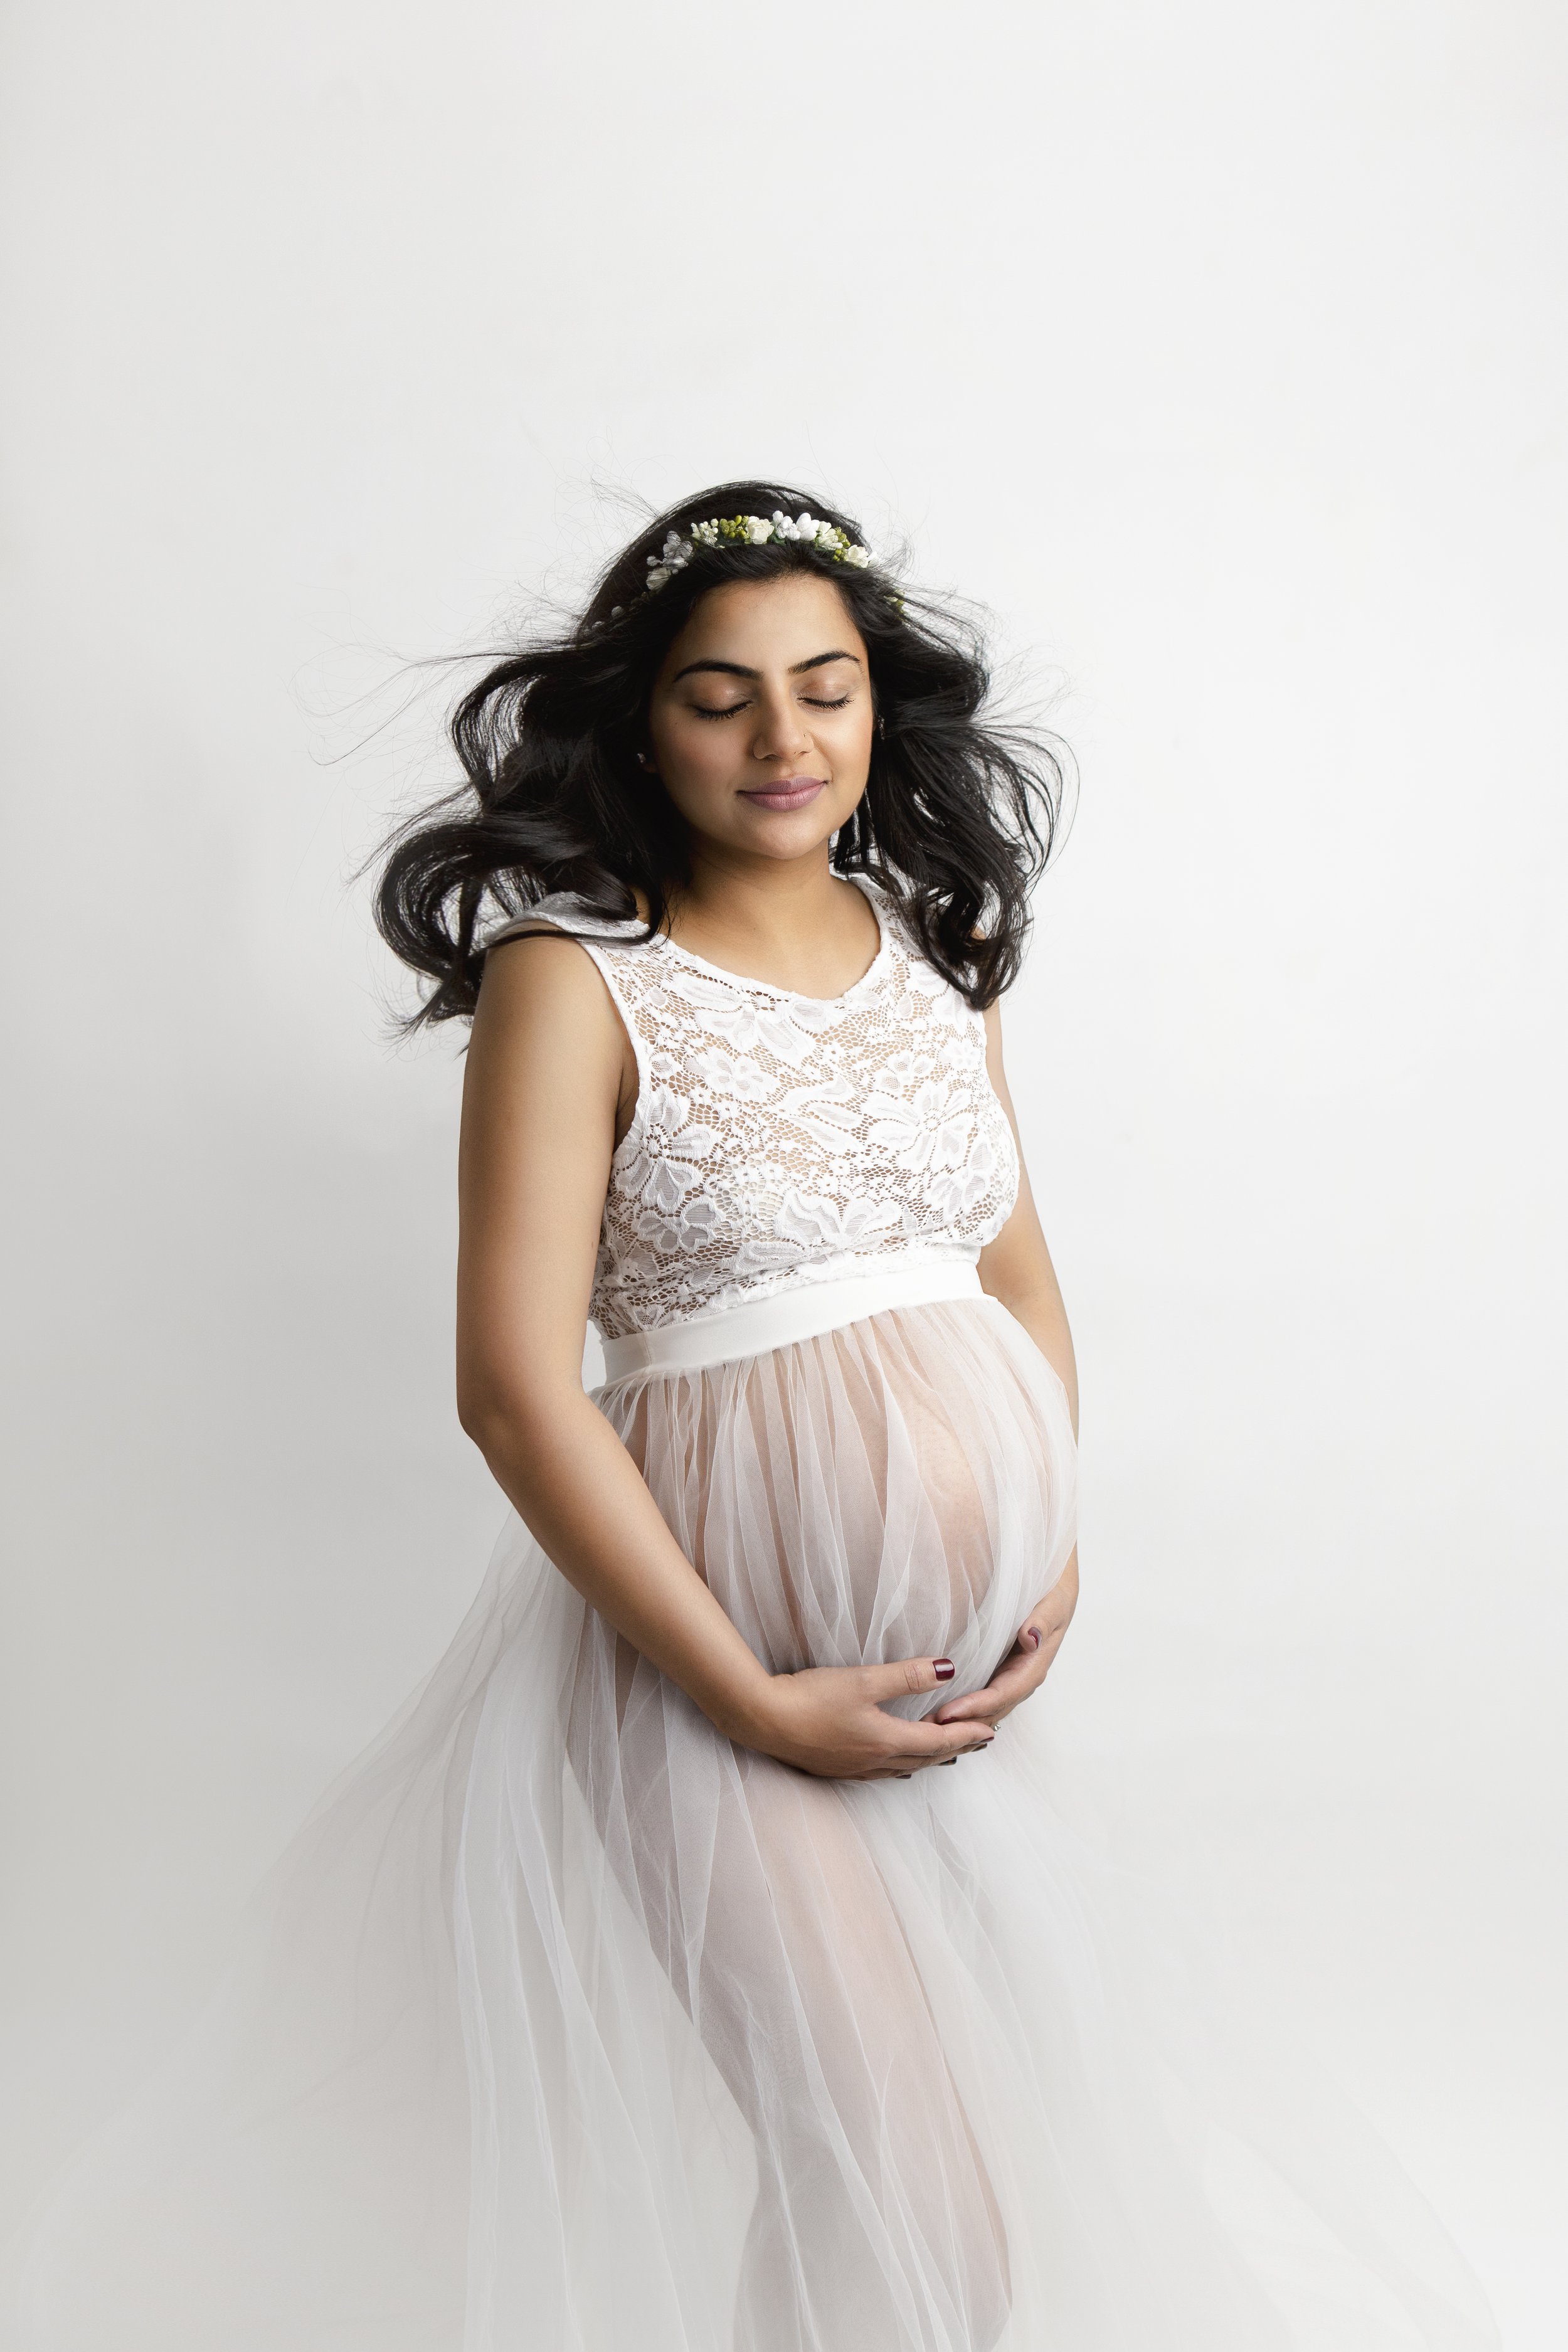 maternity photography milton keynes